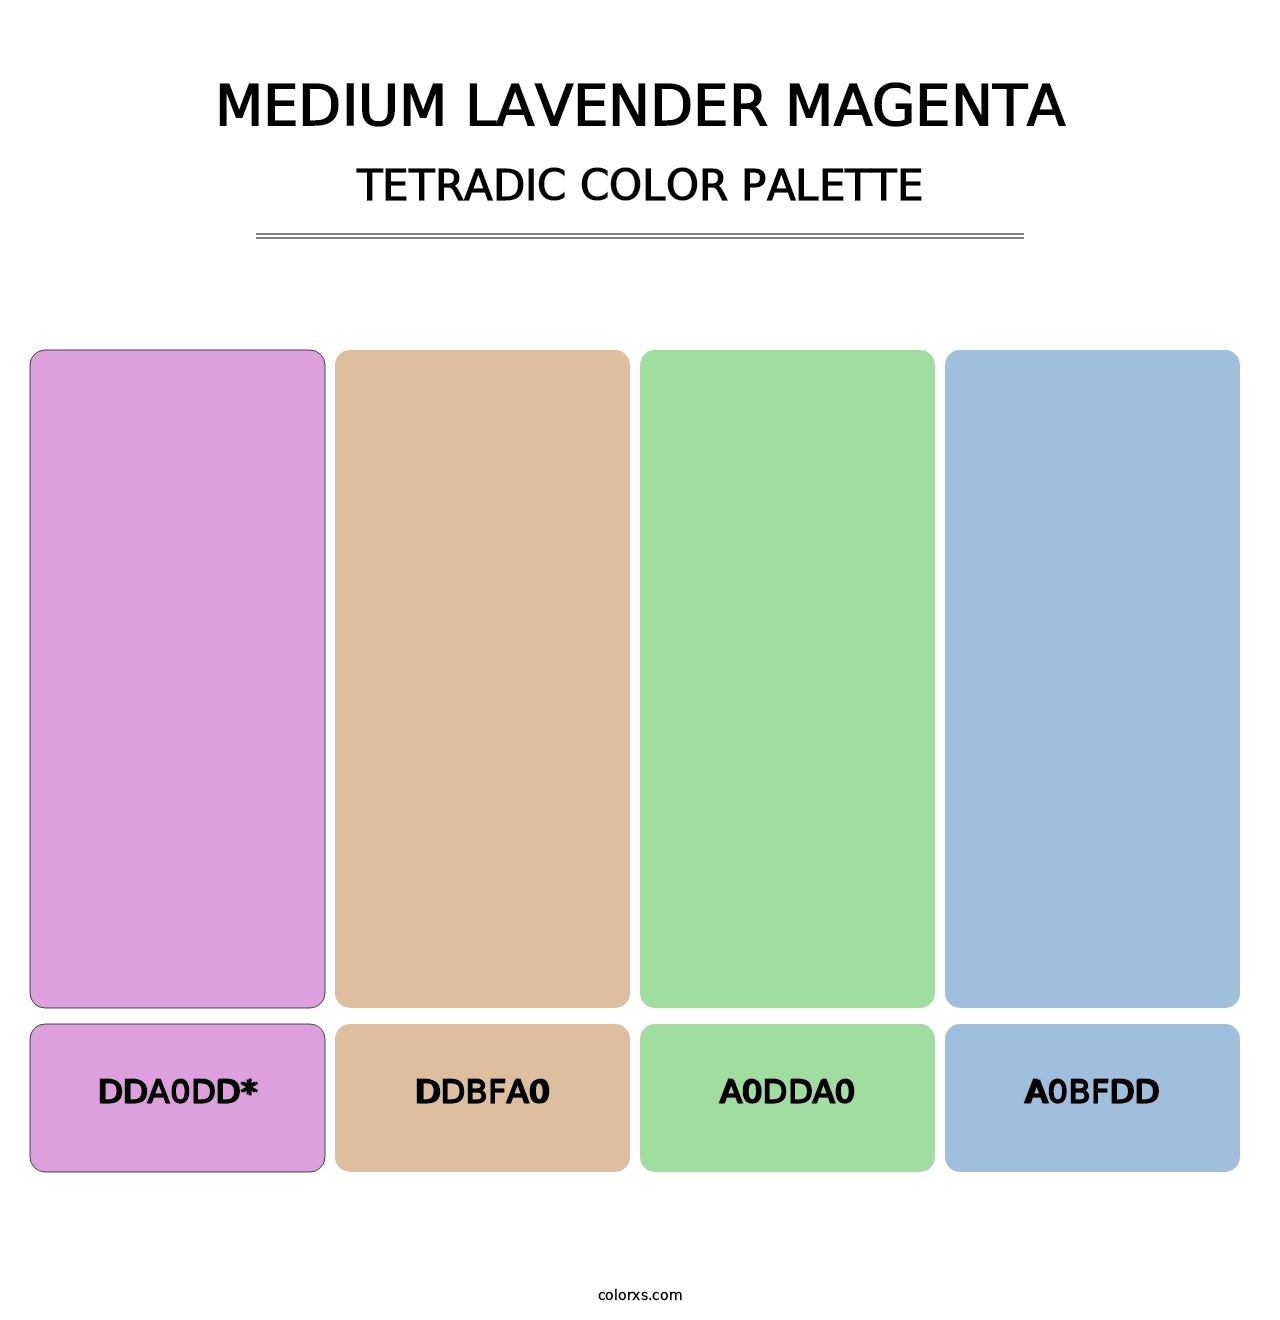 Medium Lavender Magenta - Tetradic Color Palette